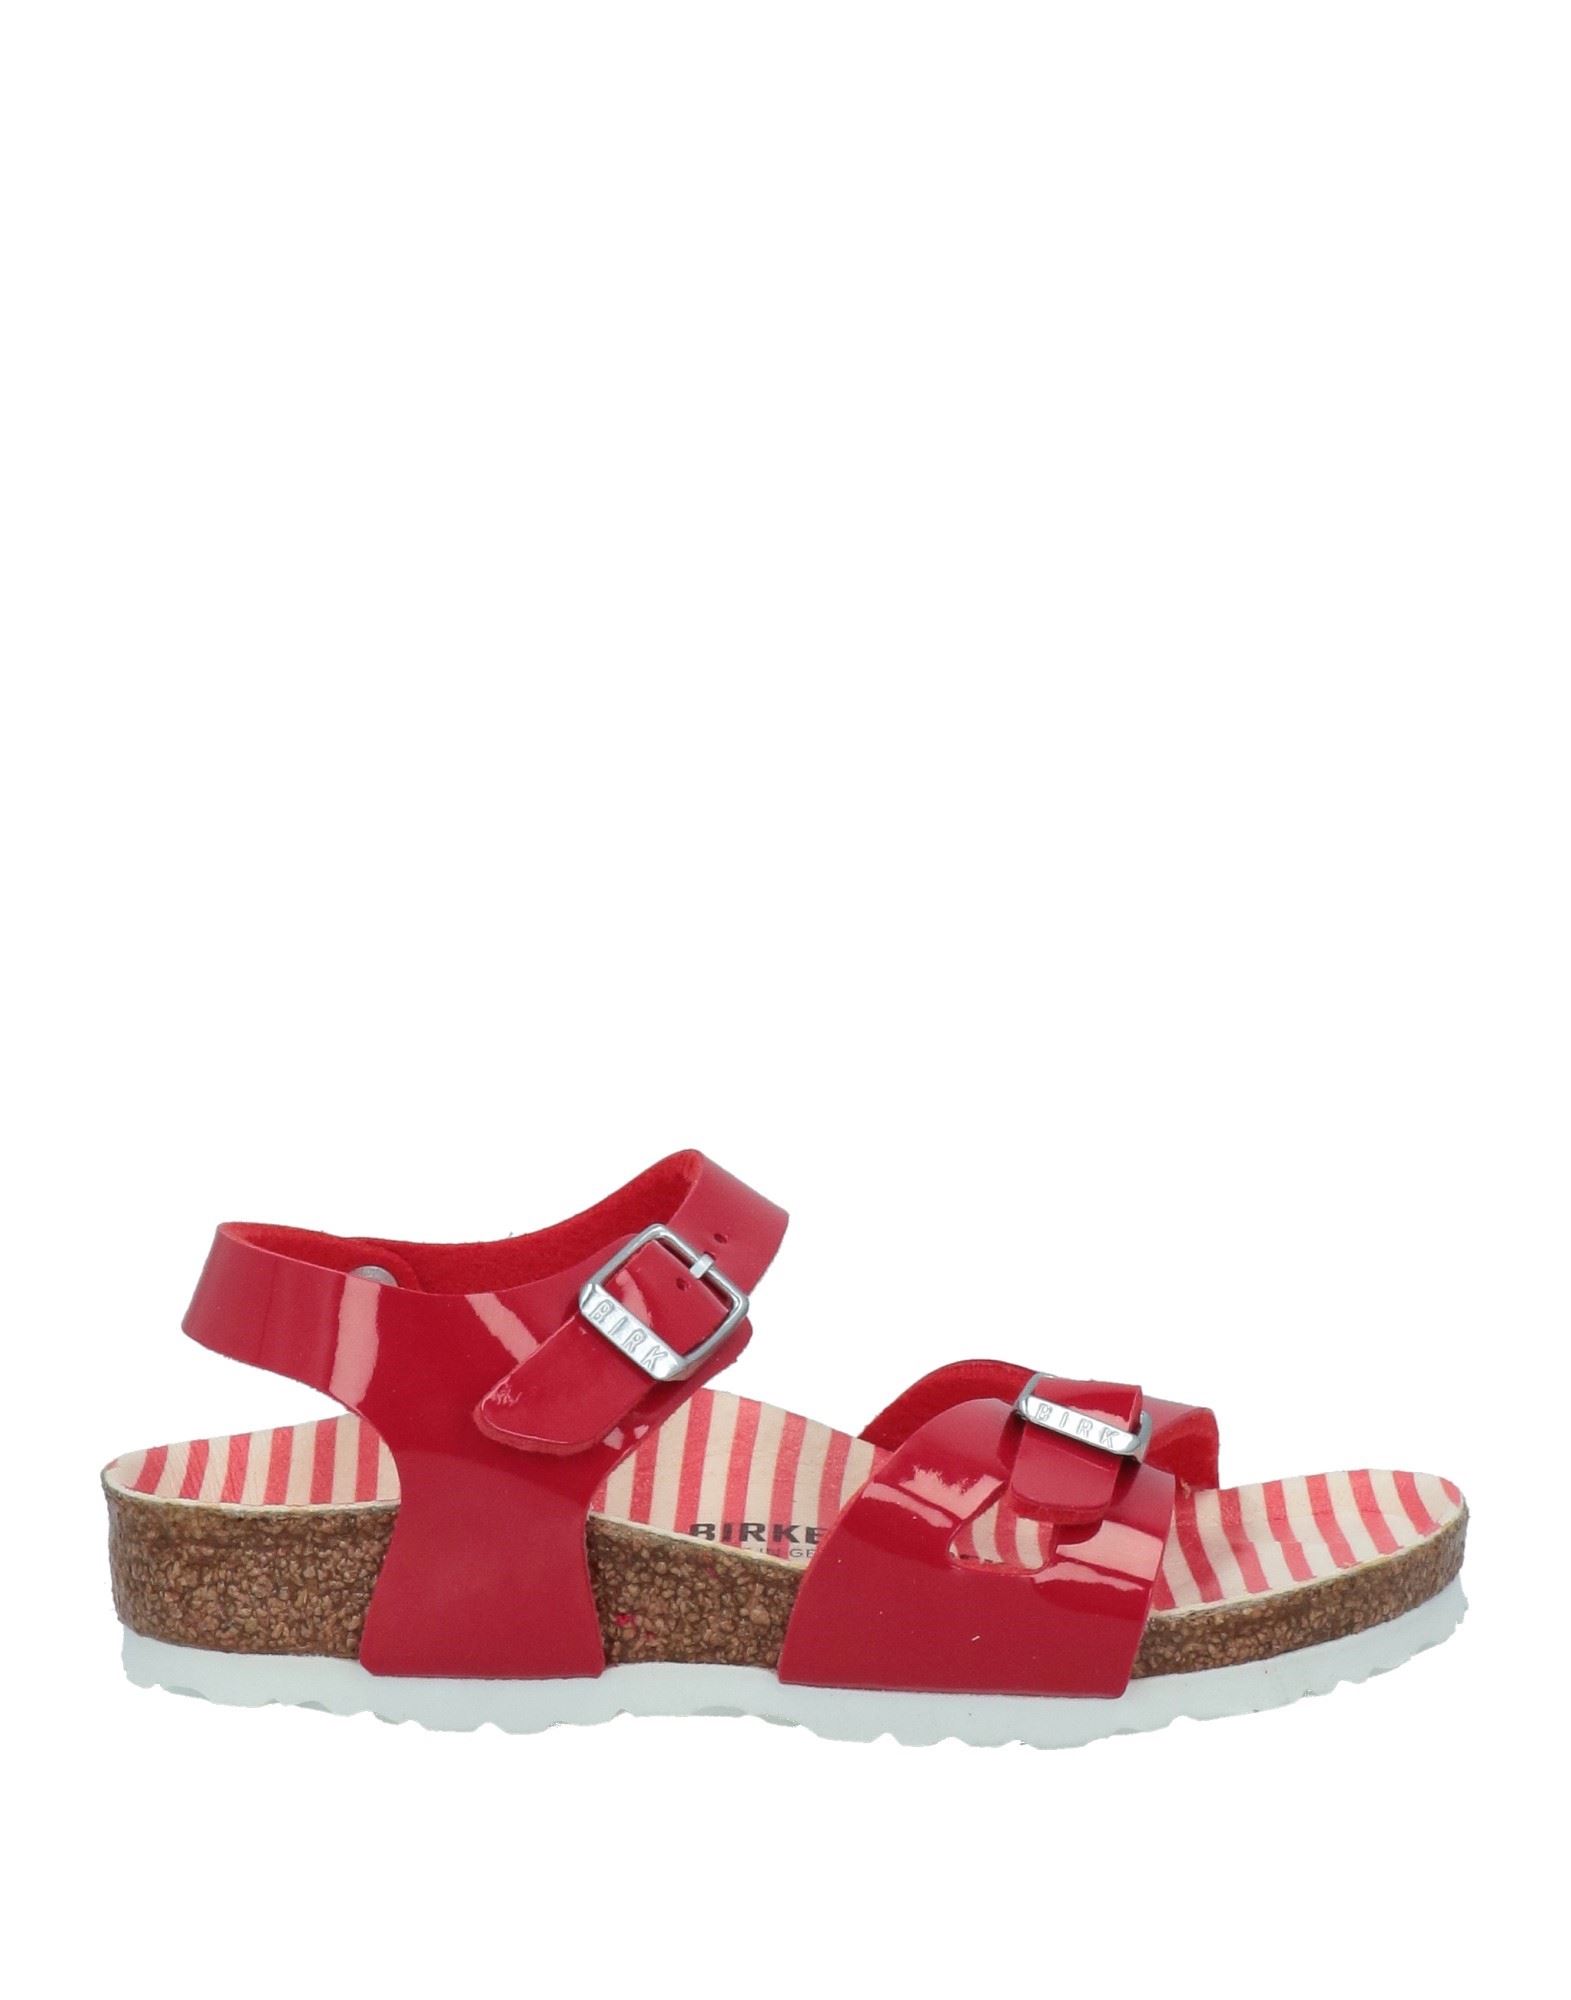 Shop Birkenstock Toddler Girl Sandals Red Size 8c Textile Fibers